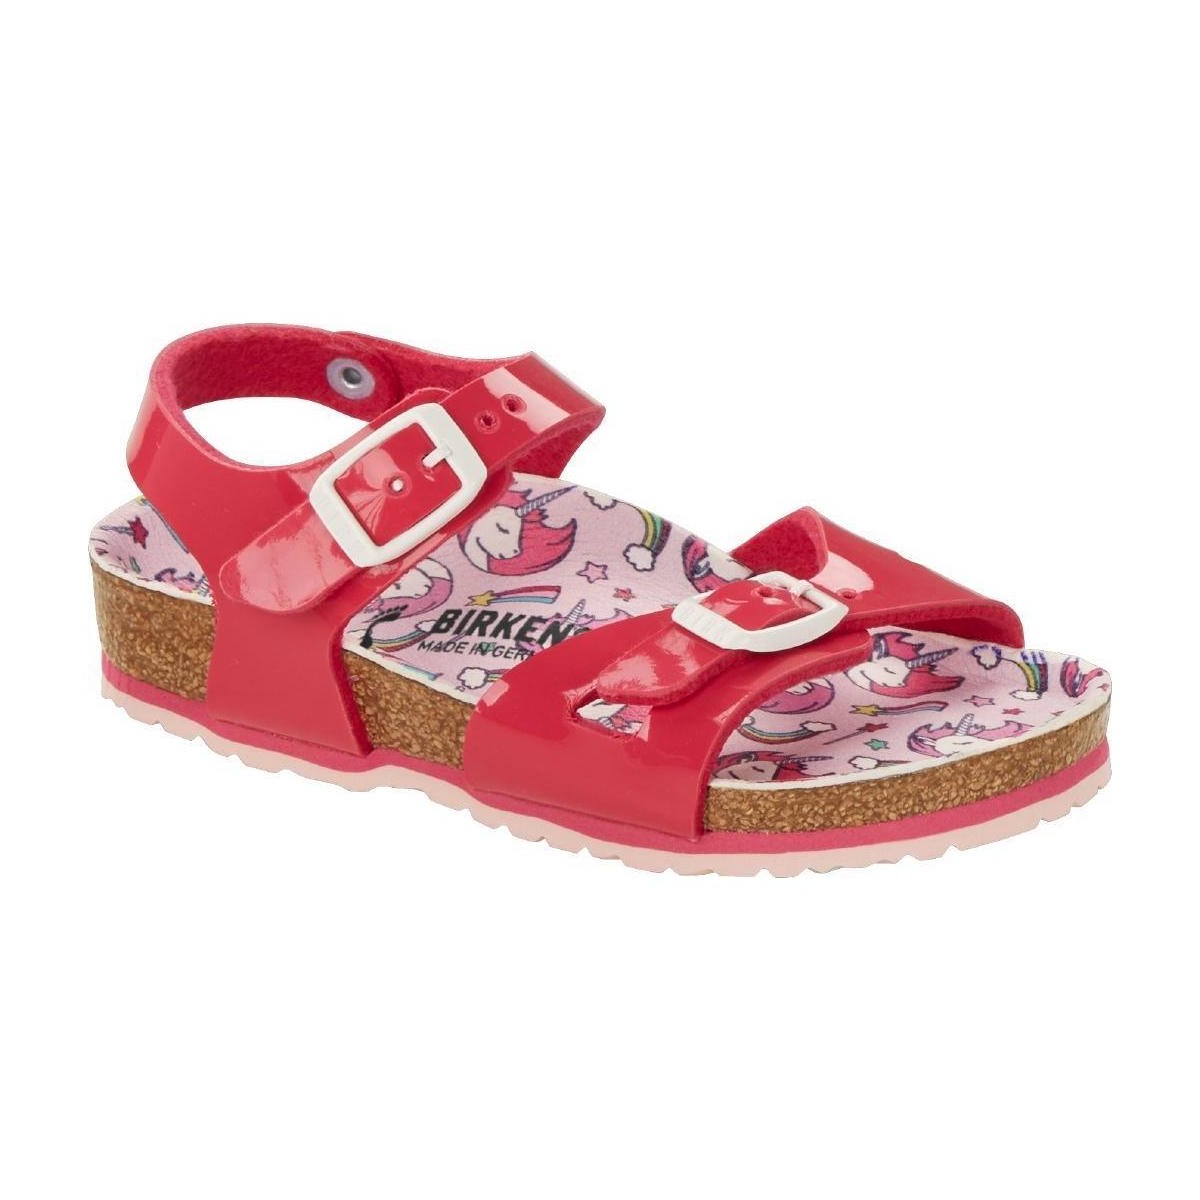 Schuhe Kinder Sandalen / Sandaletten Birkenstock 1018862 Rosa